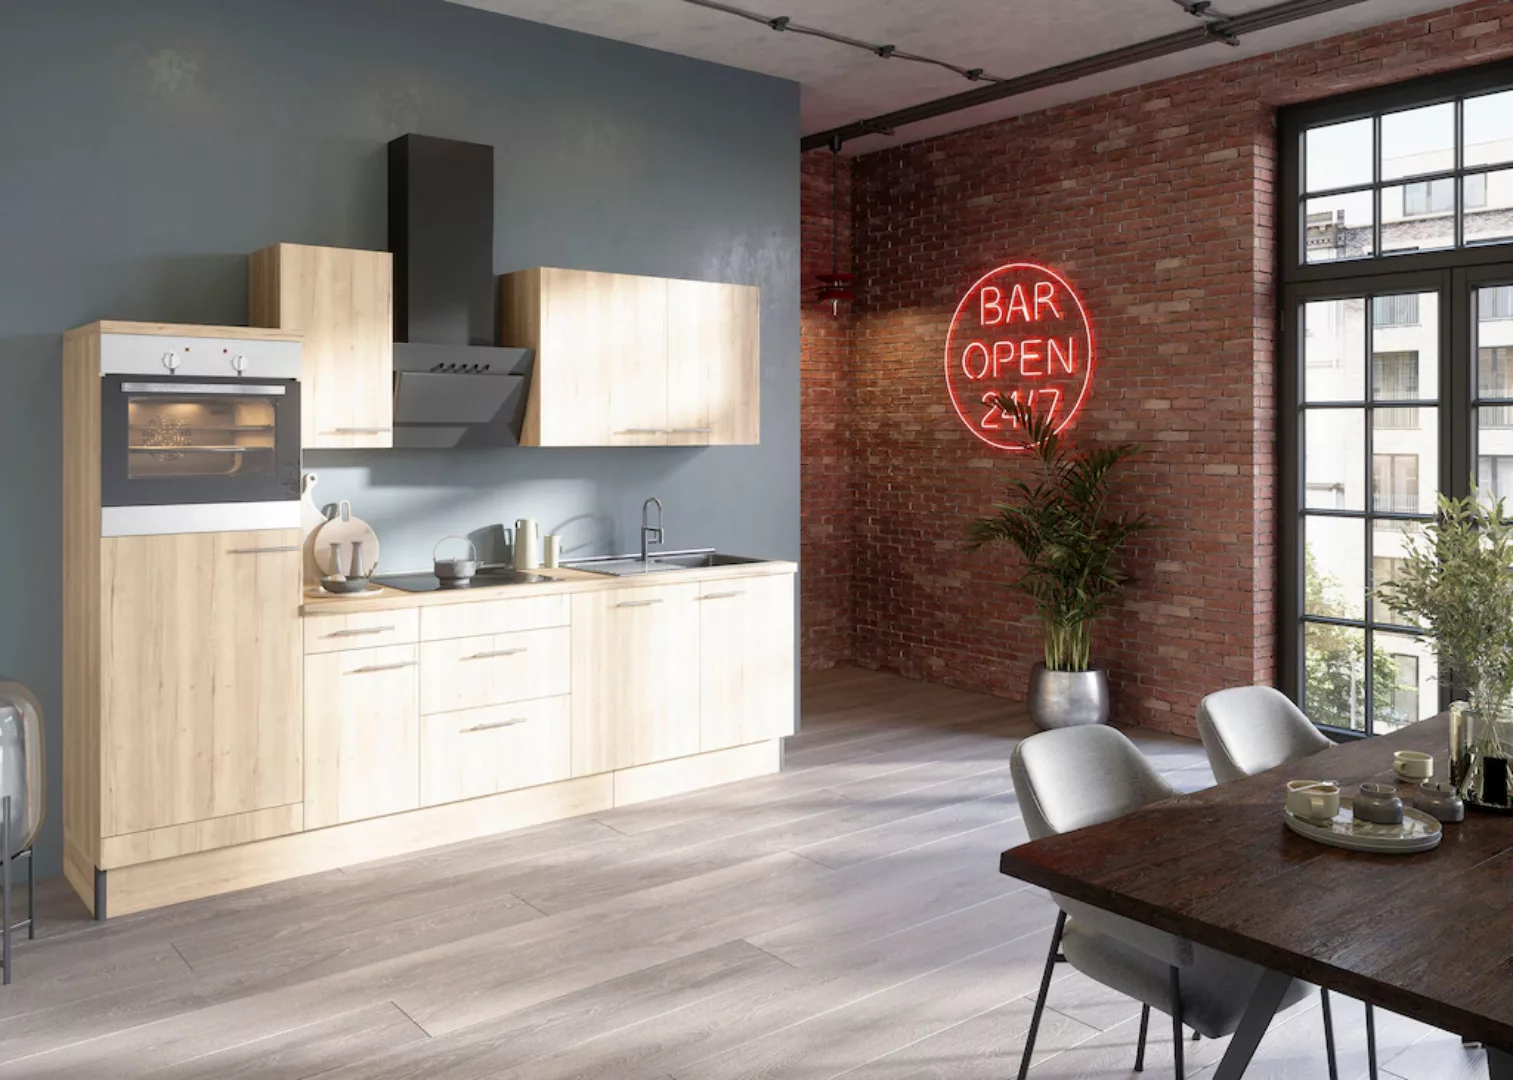 OPTIFIT Küche "Klara", Breite 270 cm, wahlweise mit E-Geräten günstig online kaufen